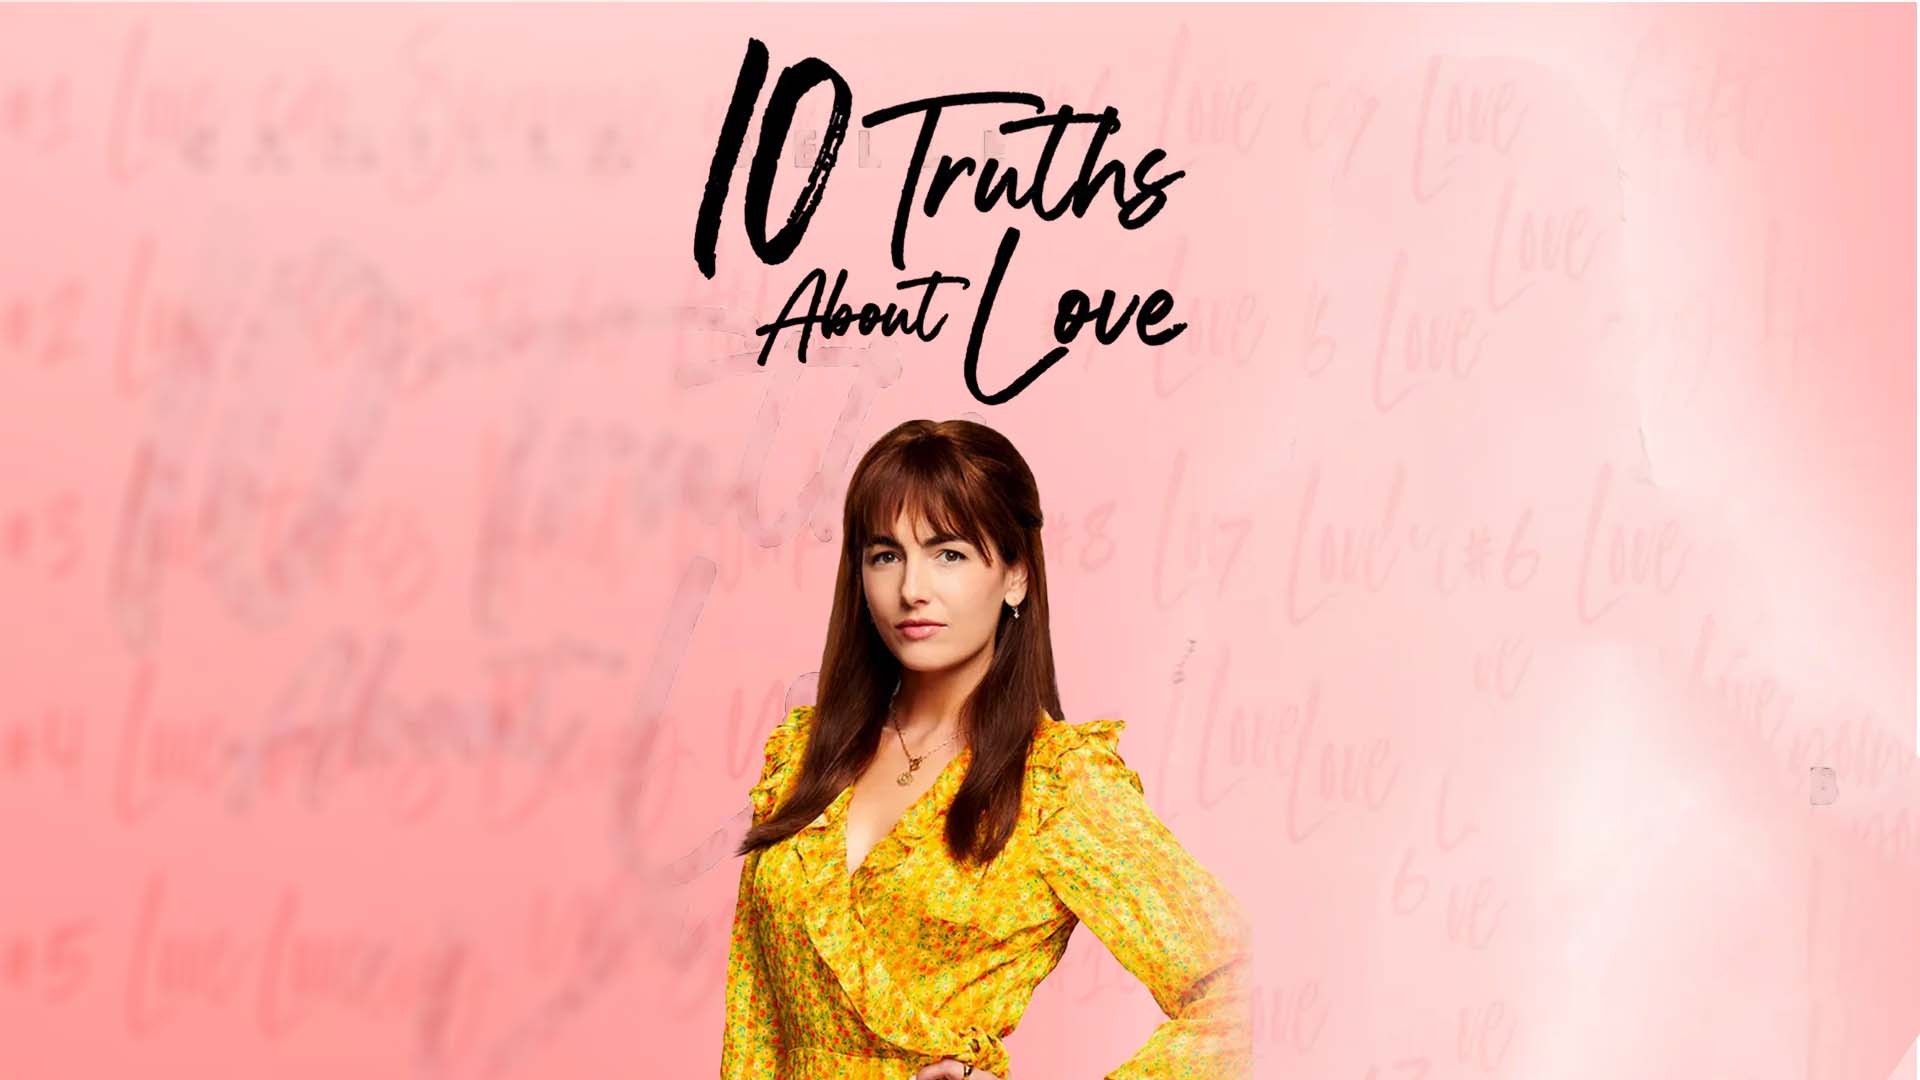 Dragoste și zece adevăruri